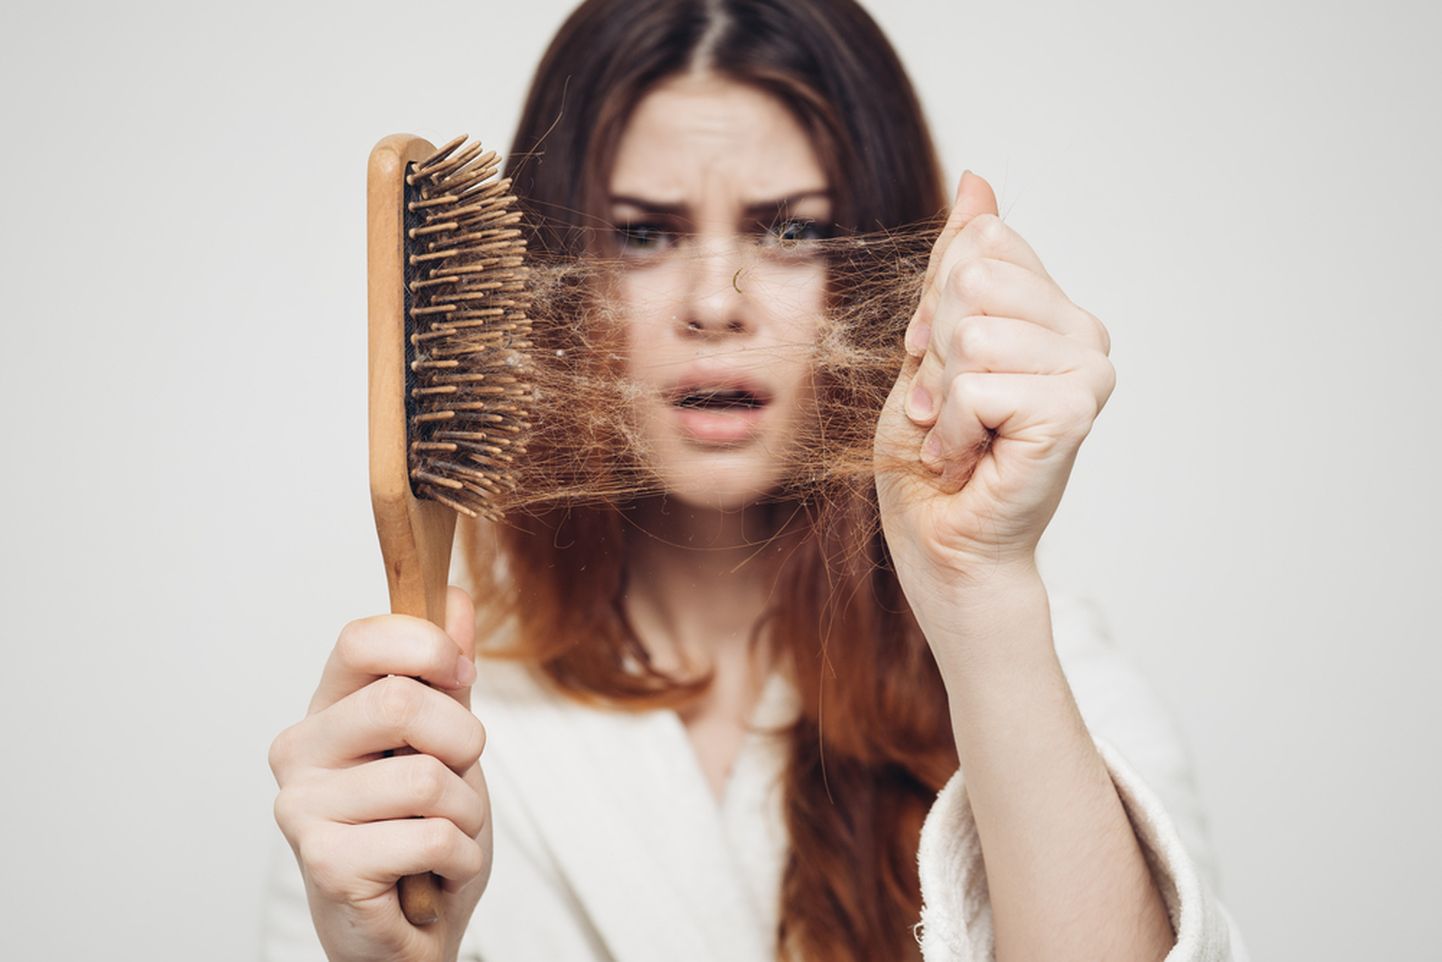 Mis võib küll olla põhjuseks, et juukseharjas on sama palju kiharaid kui peas?!